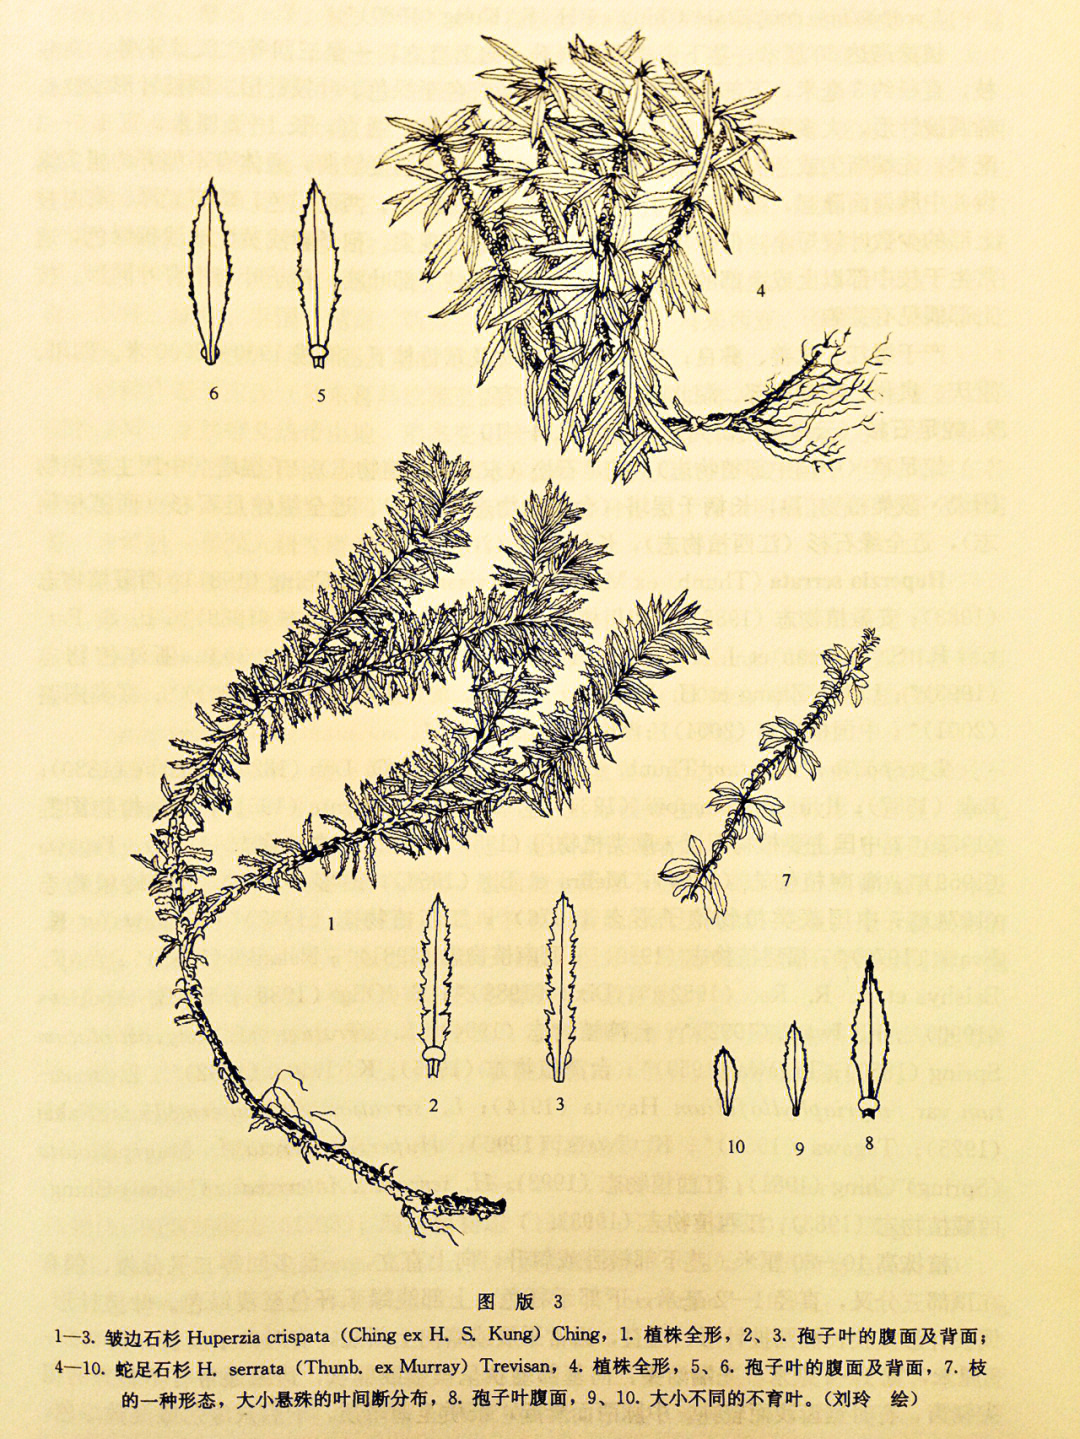 二十年前画的云南植物志蕨类卷刘玲绘